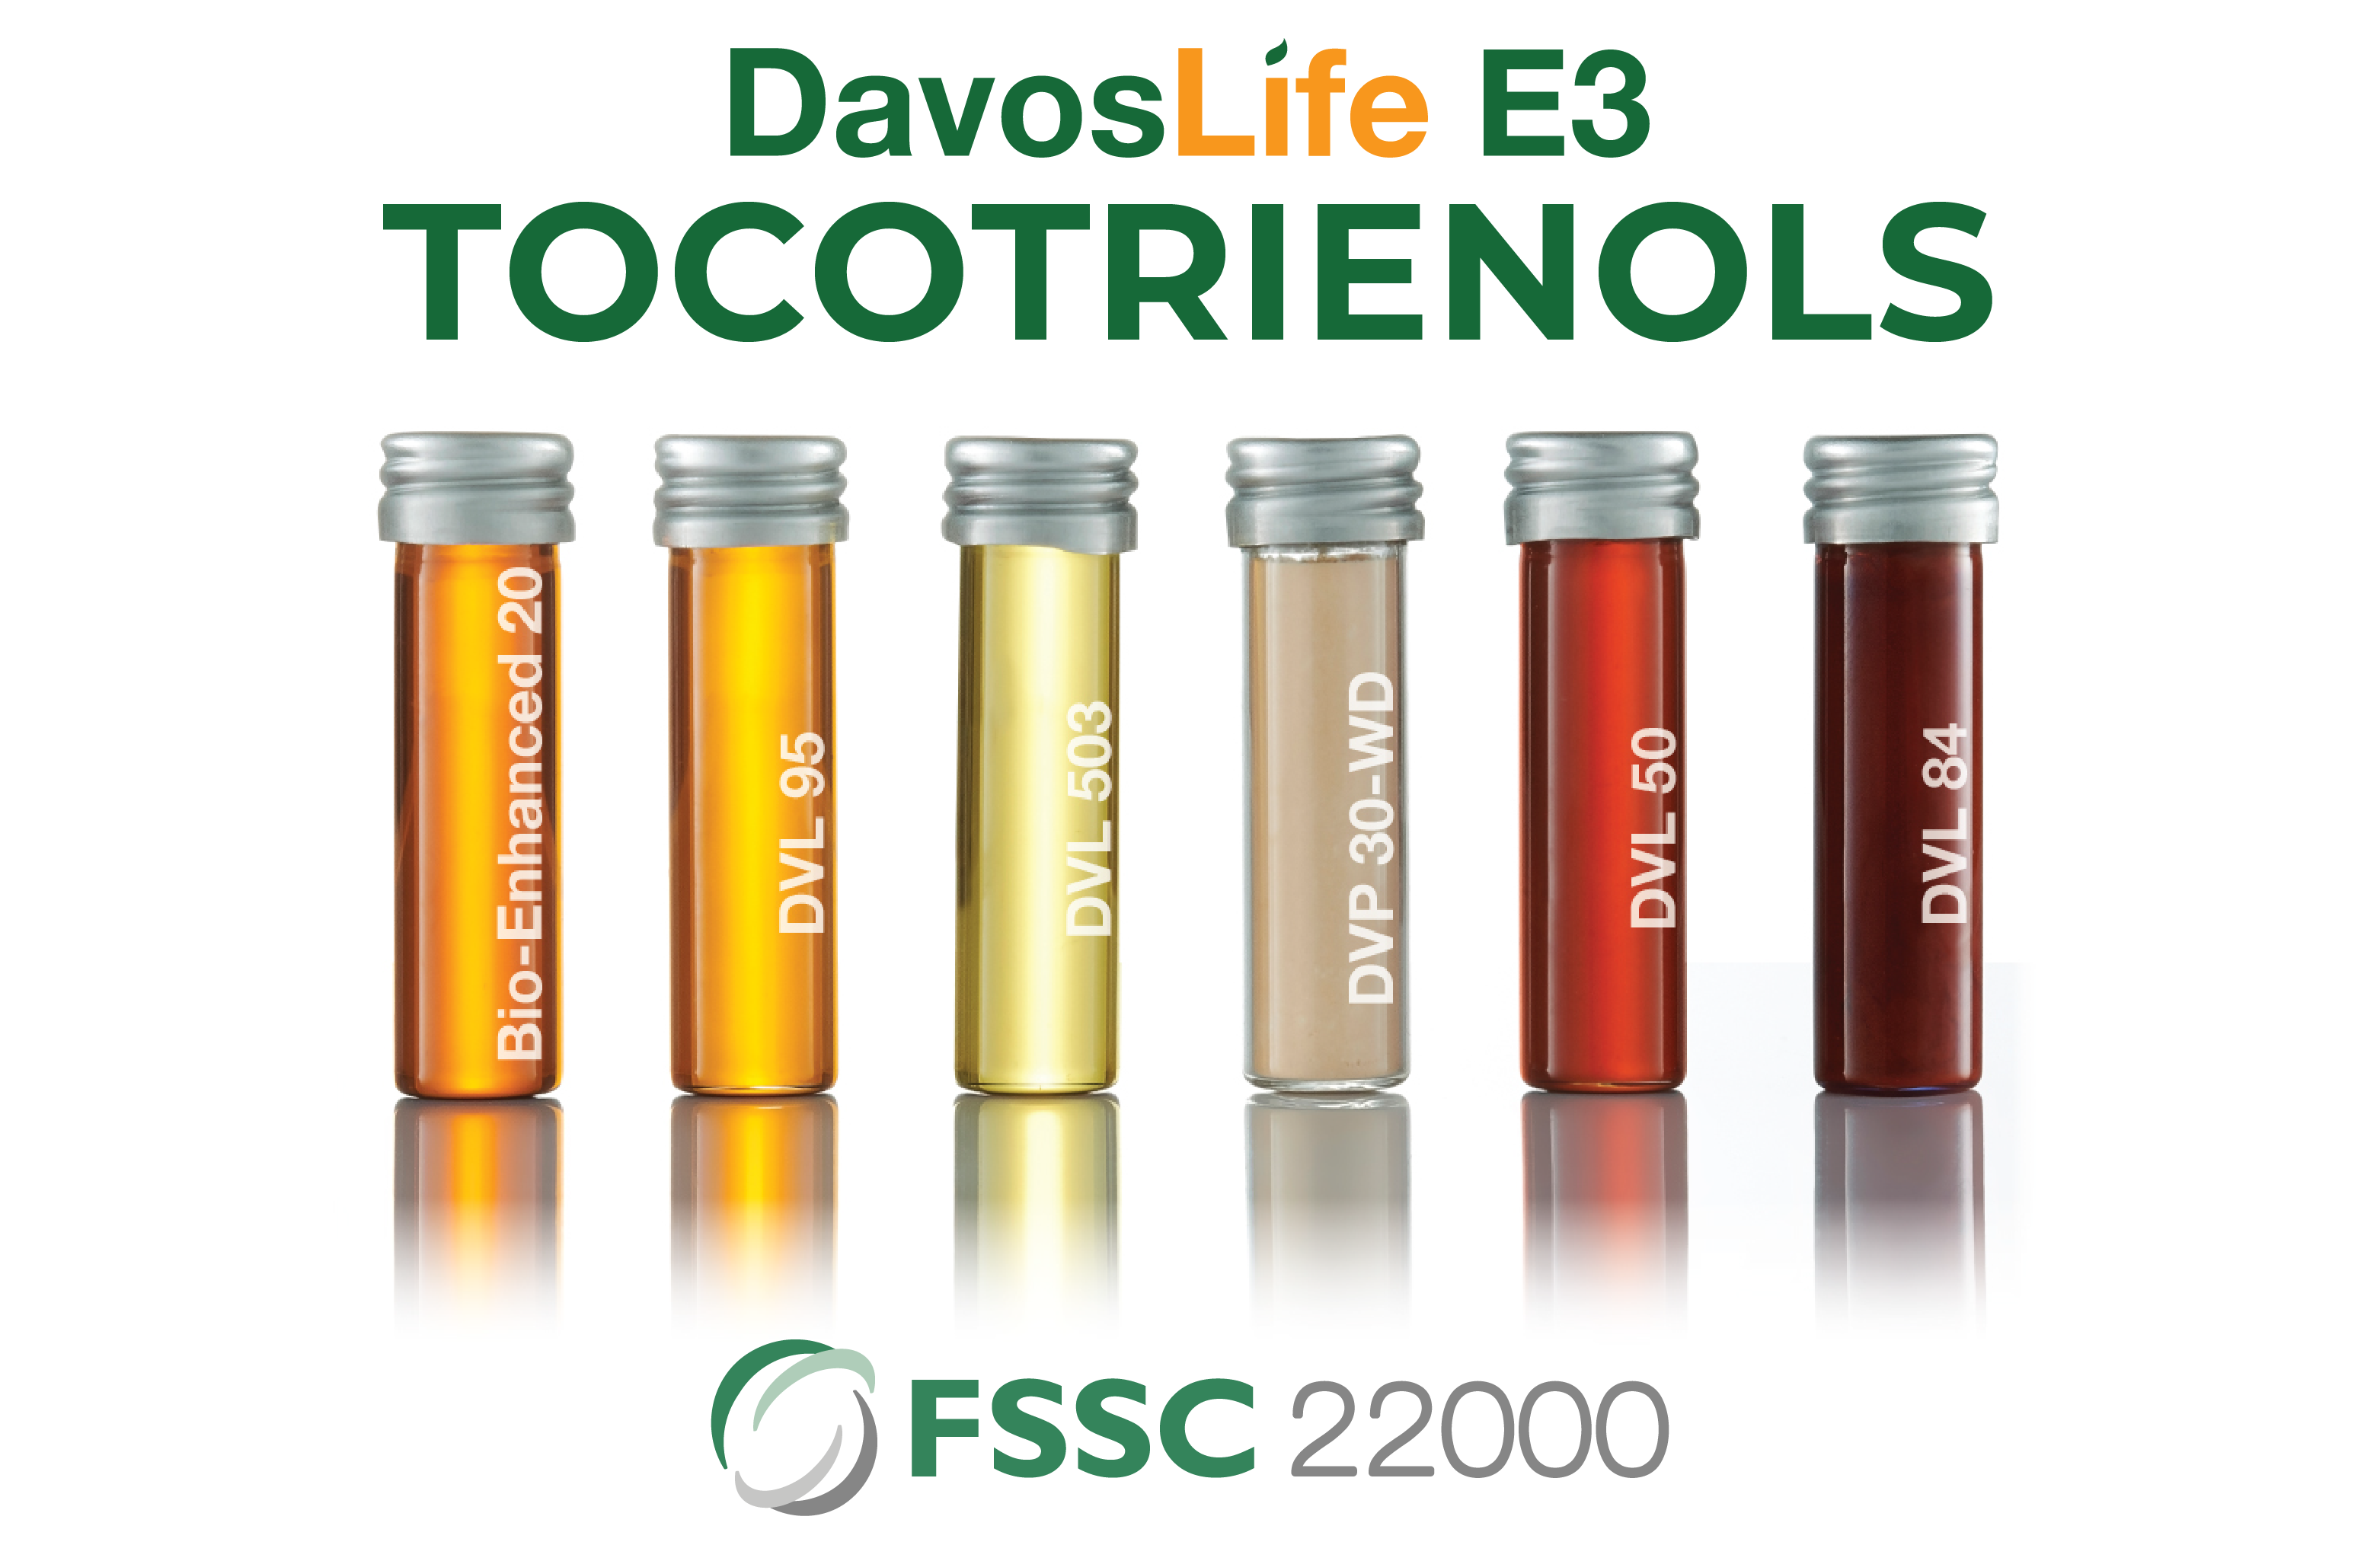 DavosLife Full Range - FSSC 22000